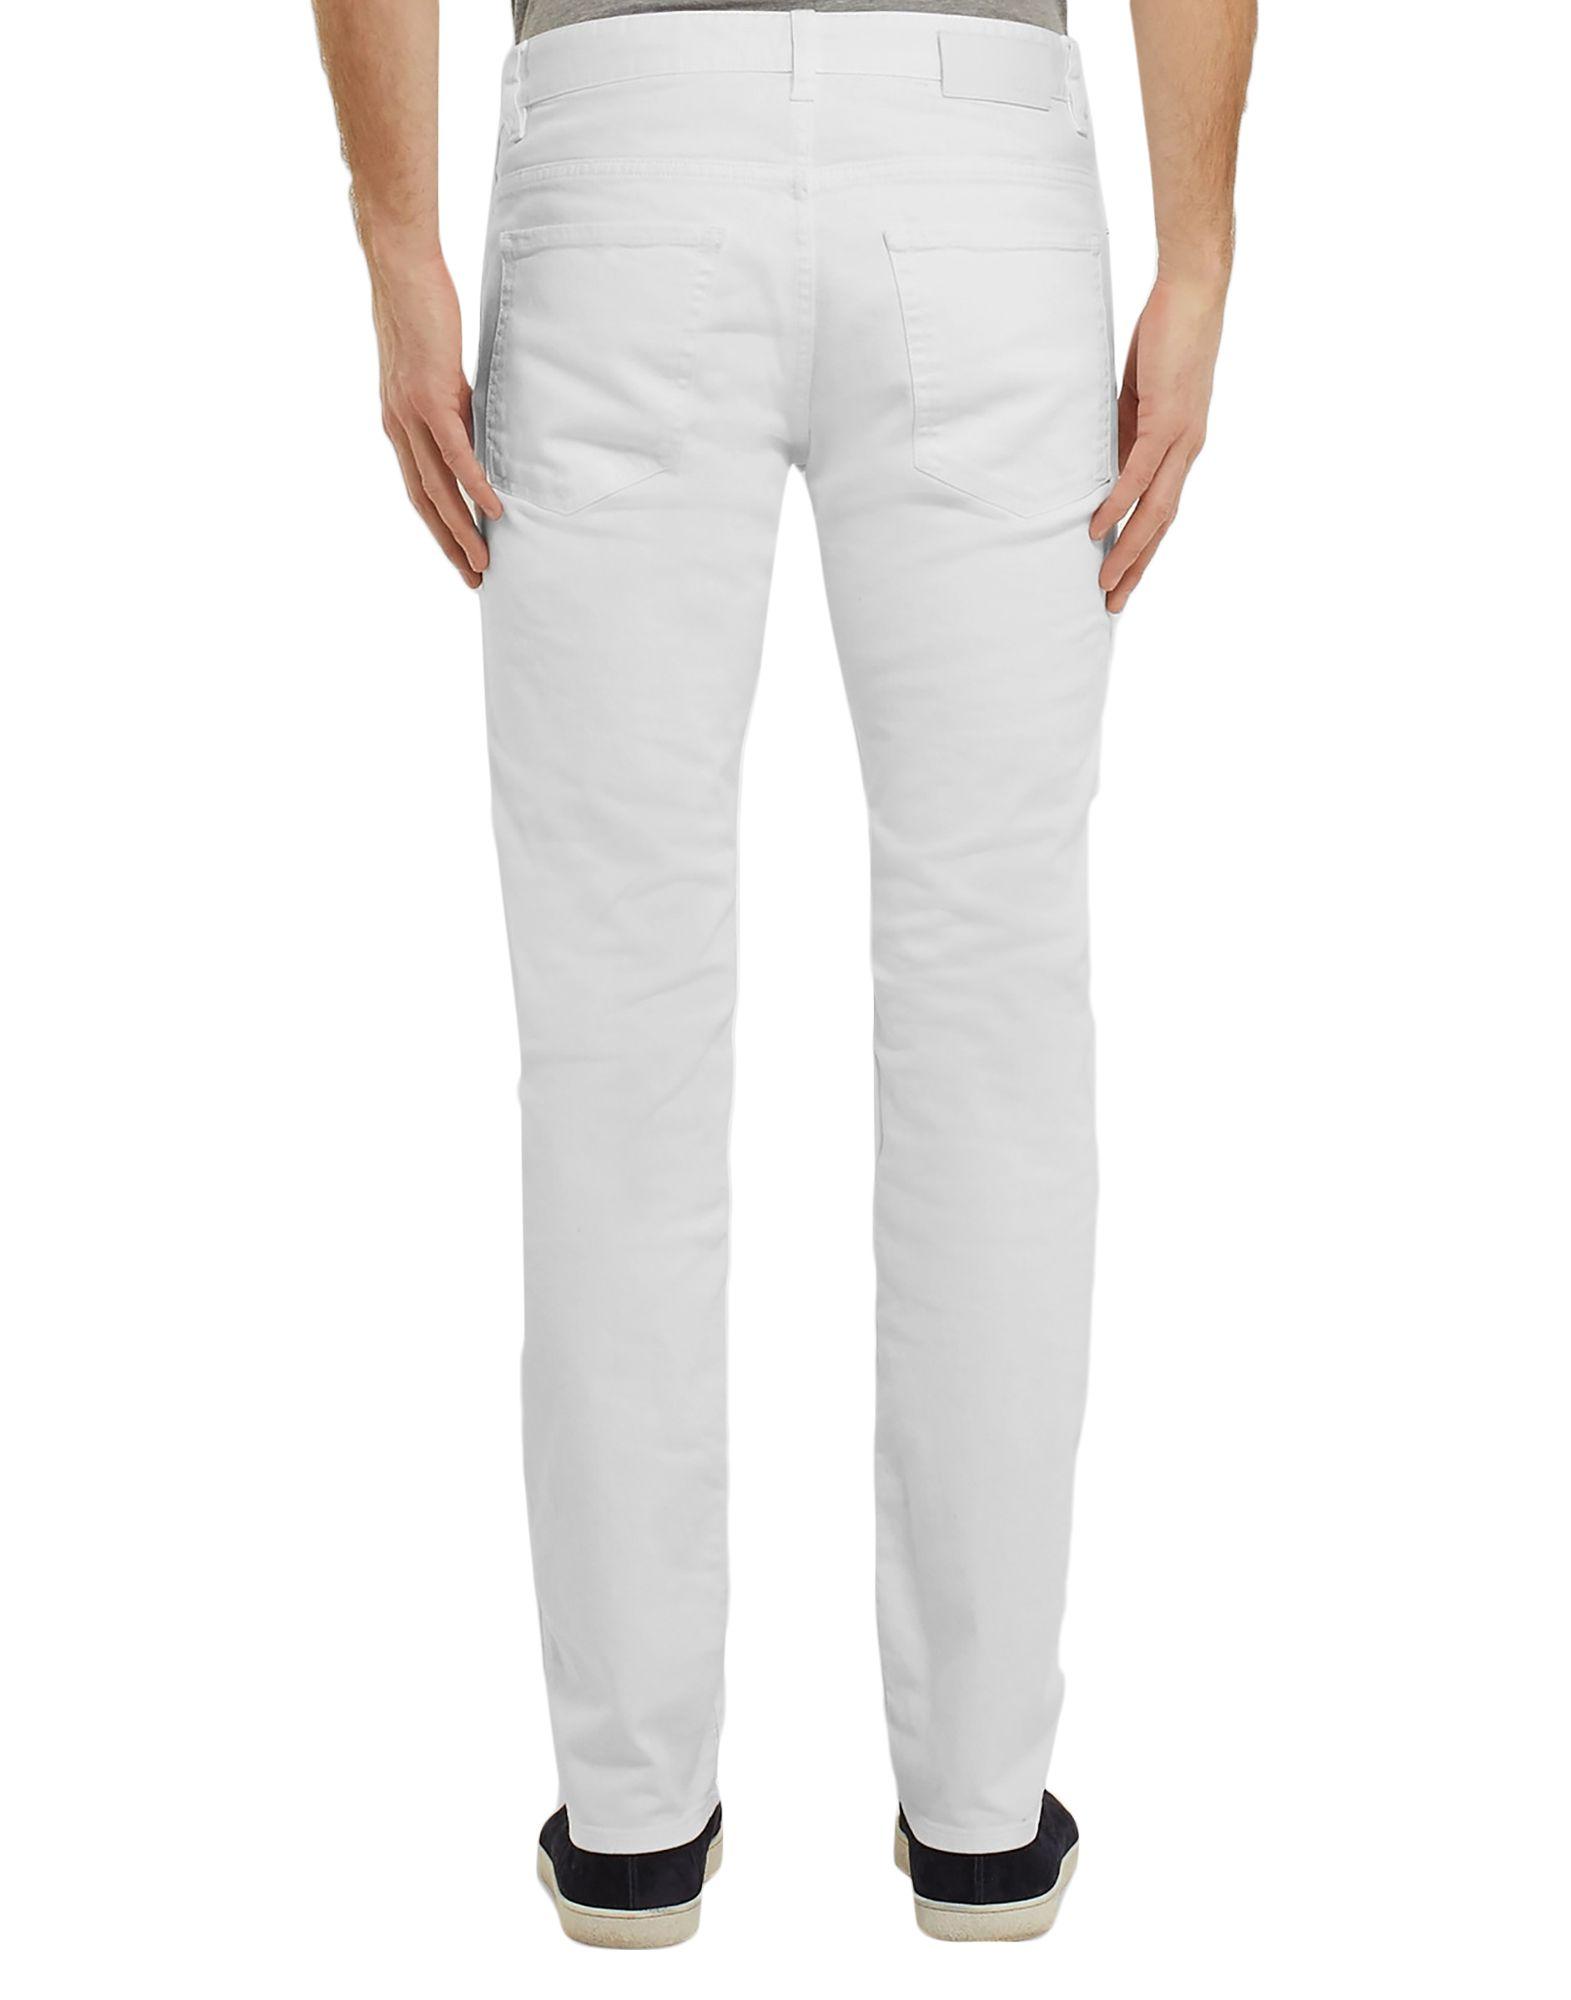 BOSS by Hugo Boss Denim Pants in White for Men - Lyst